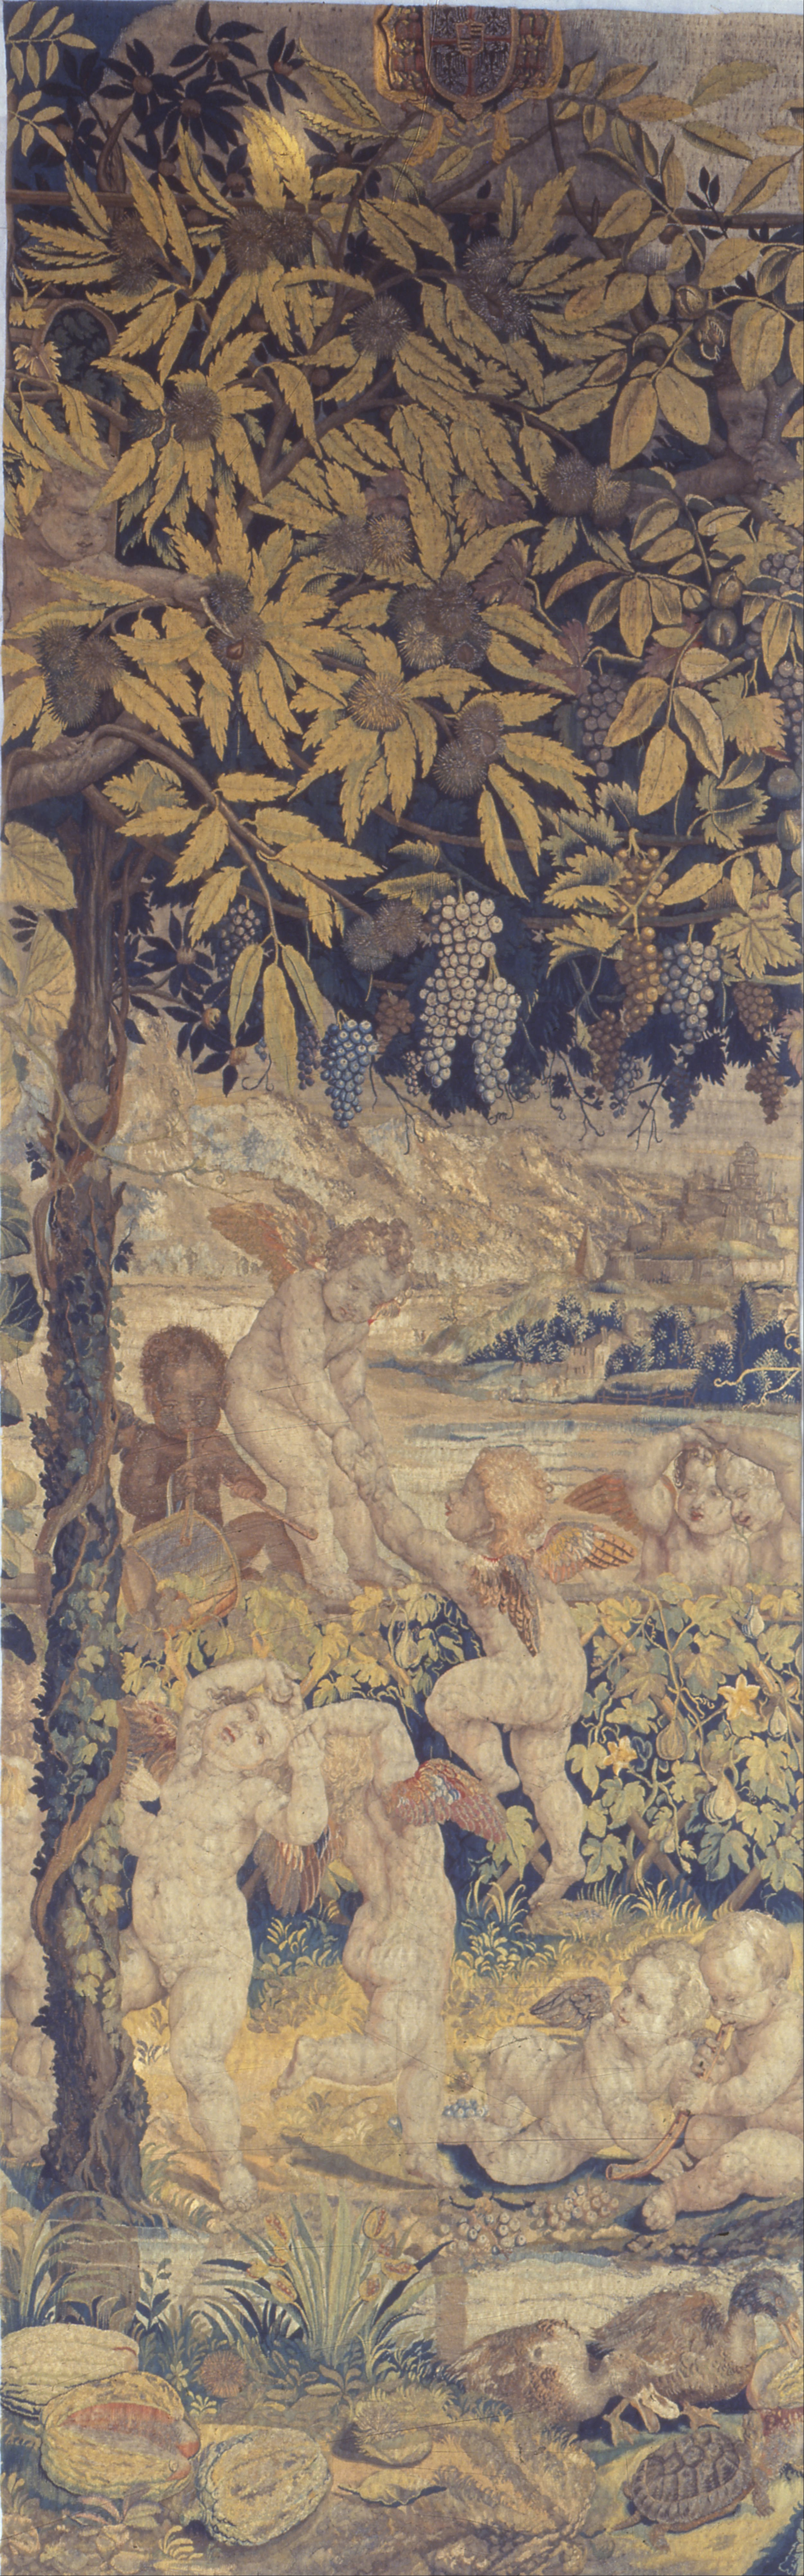 Wandteppich mit spielenden Putten by Giulio Romano - 1540 - 1545 - 107 x 341 cm Museo Poldi Pezzoli